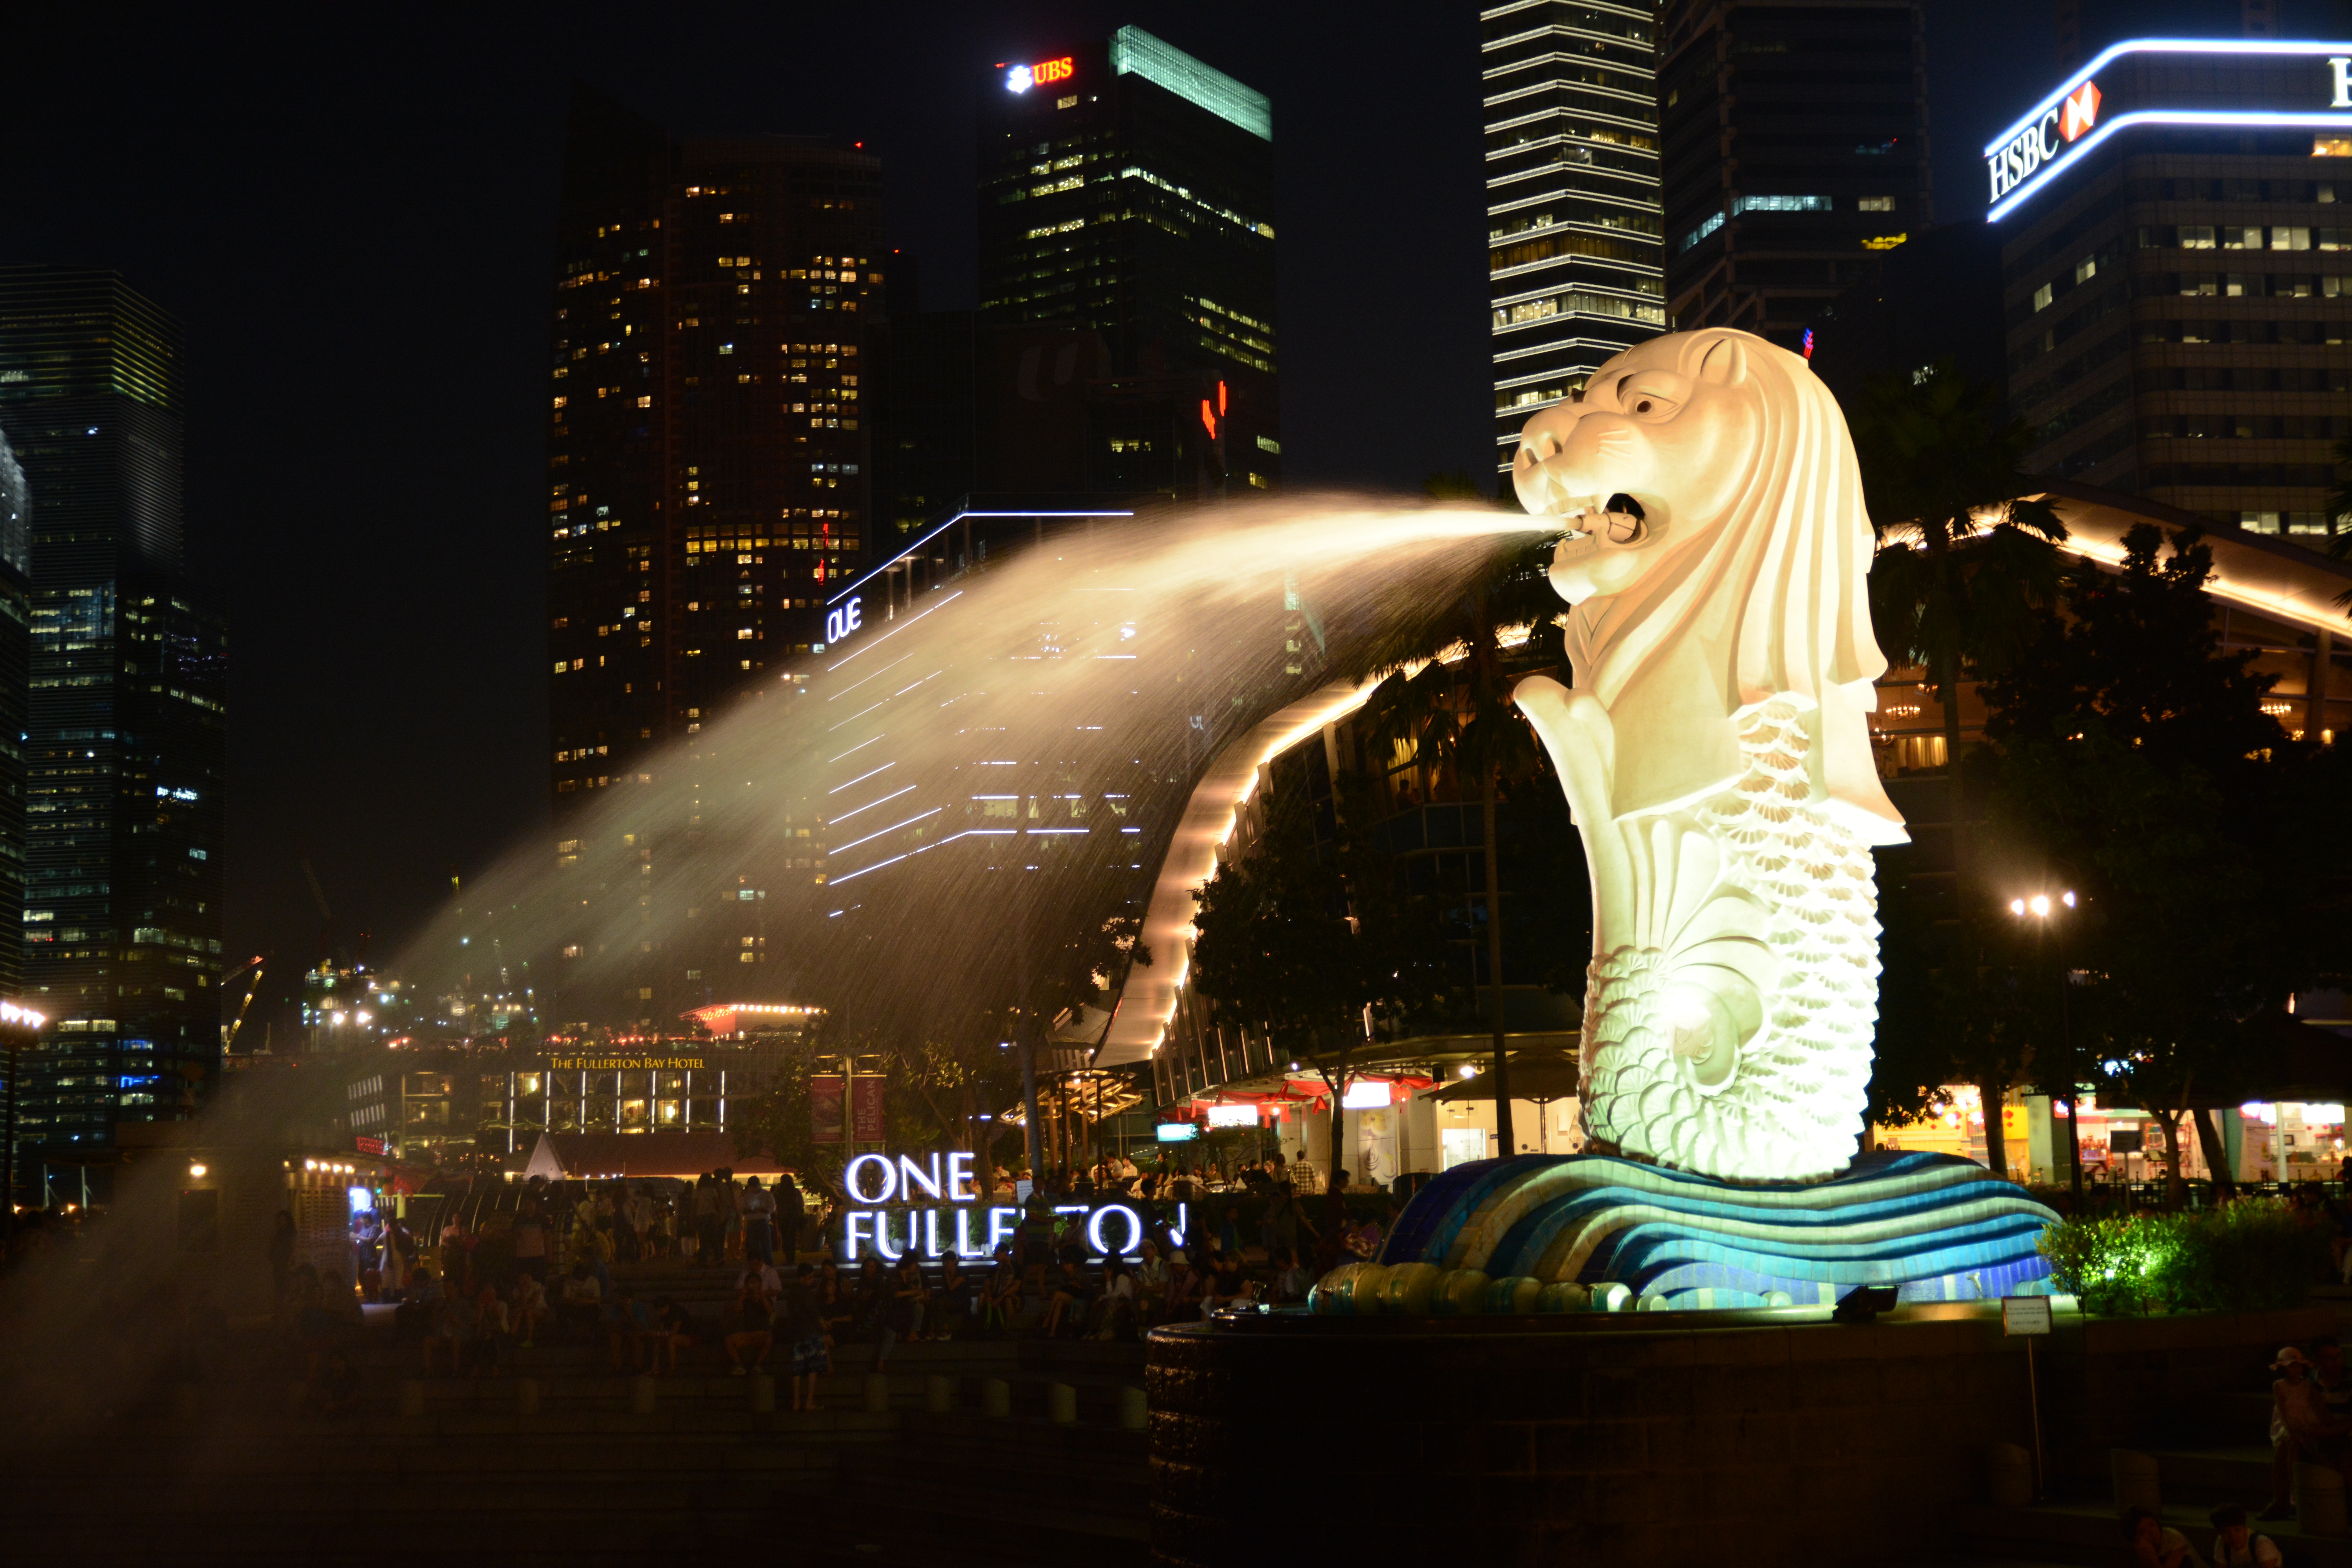 一度は行ってみたい シンガポール観光スポットの高画質画像まとめ 写真まとめサイト Pictas